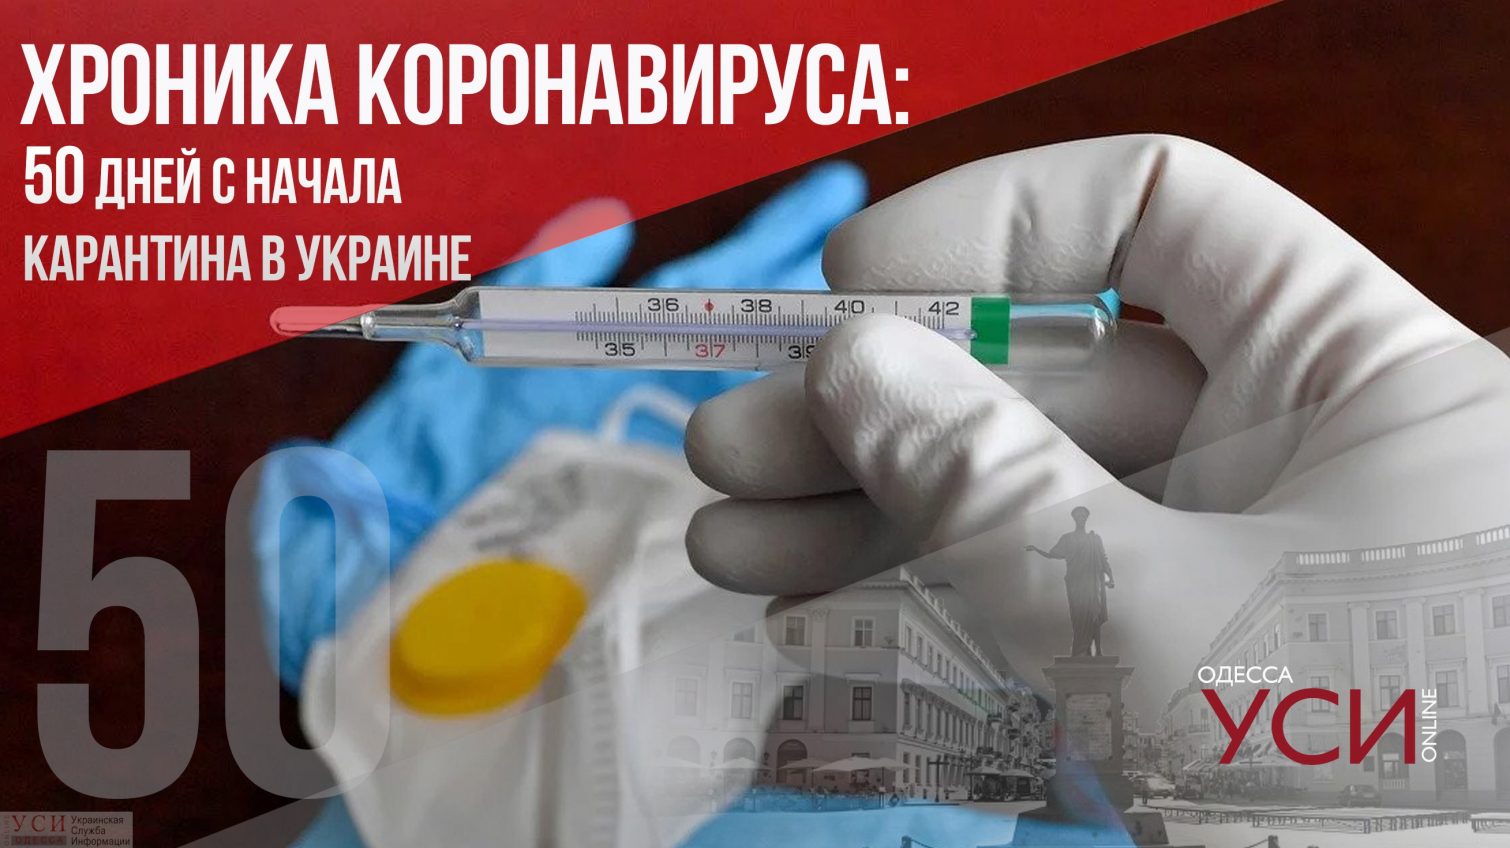 Хроника коронавируса: 50-й день карантина в Украине ОБНОВЛЯЕТСЯ «фото»